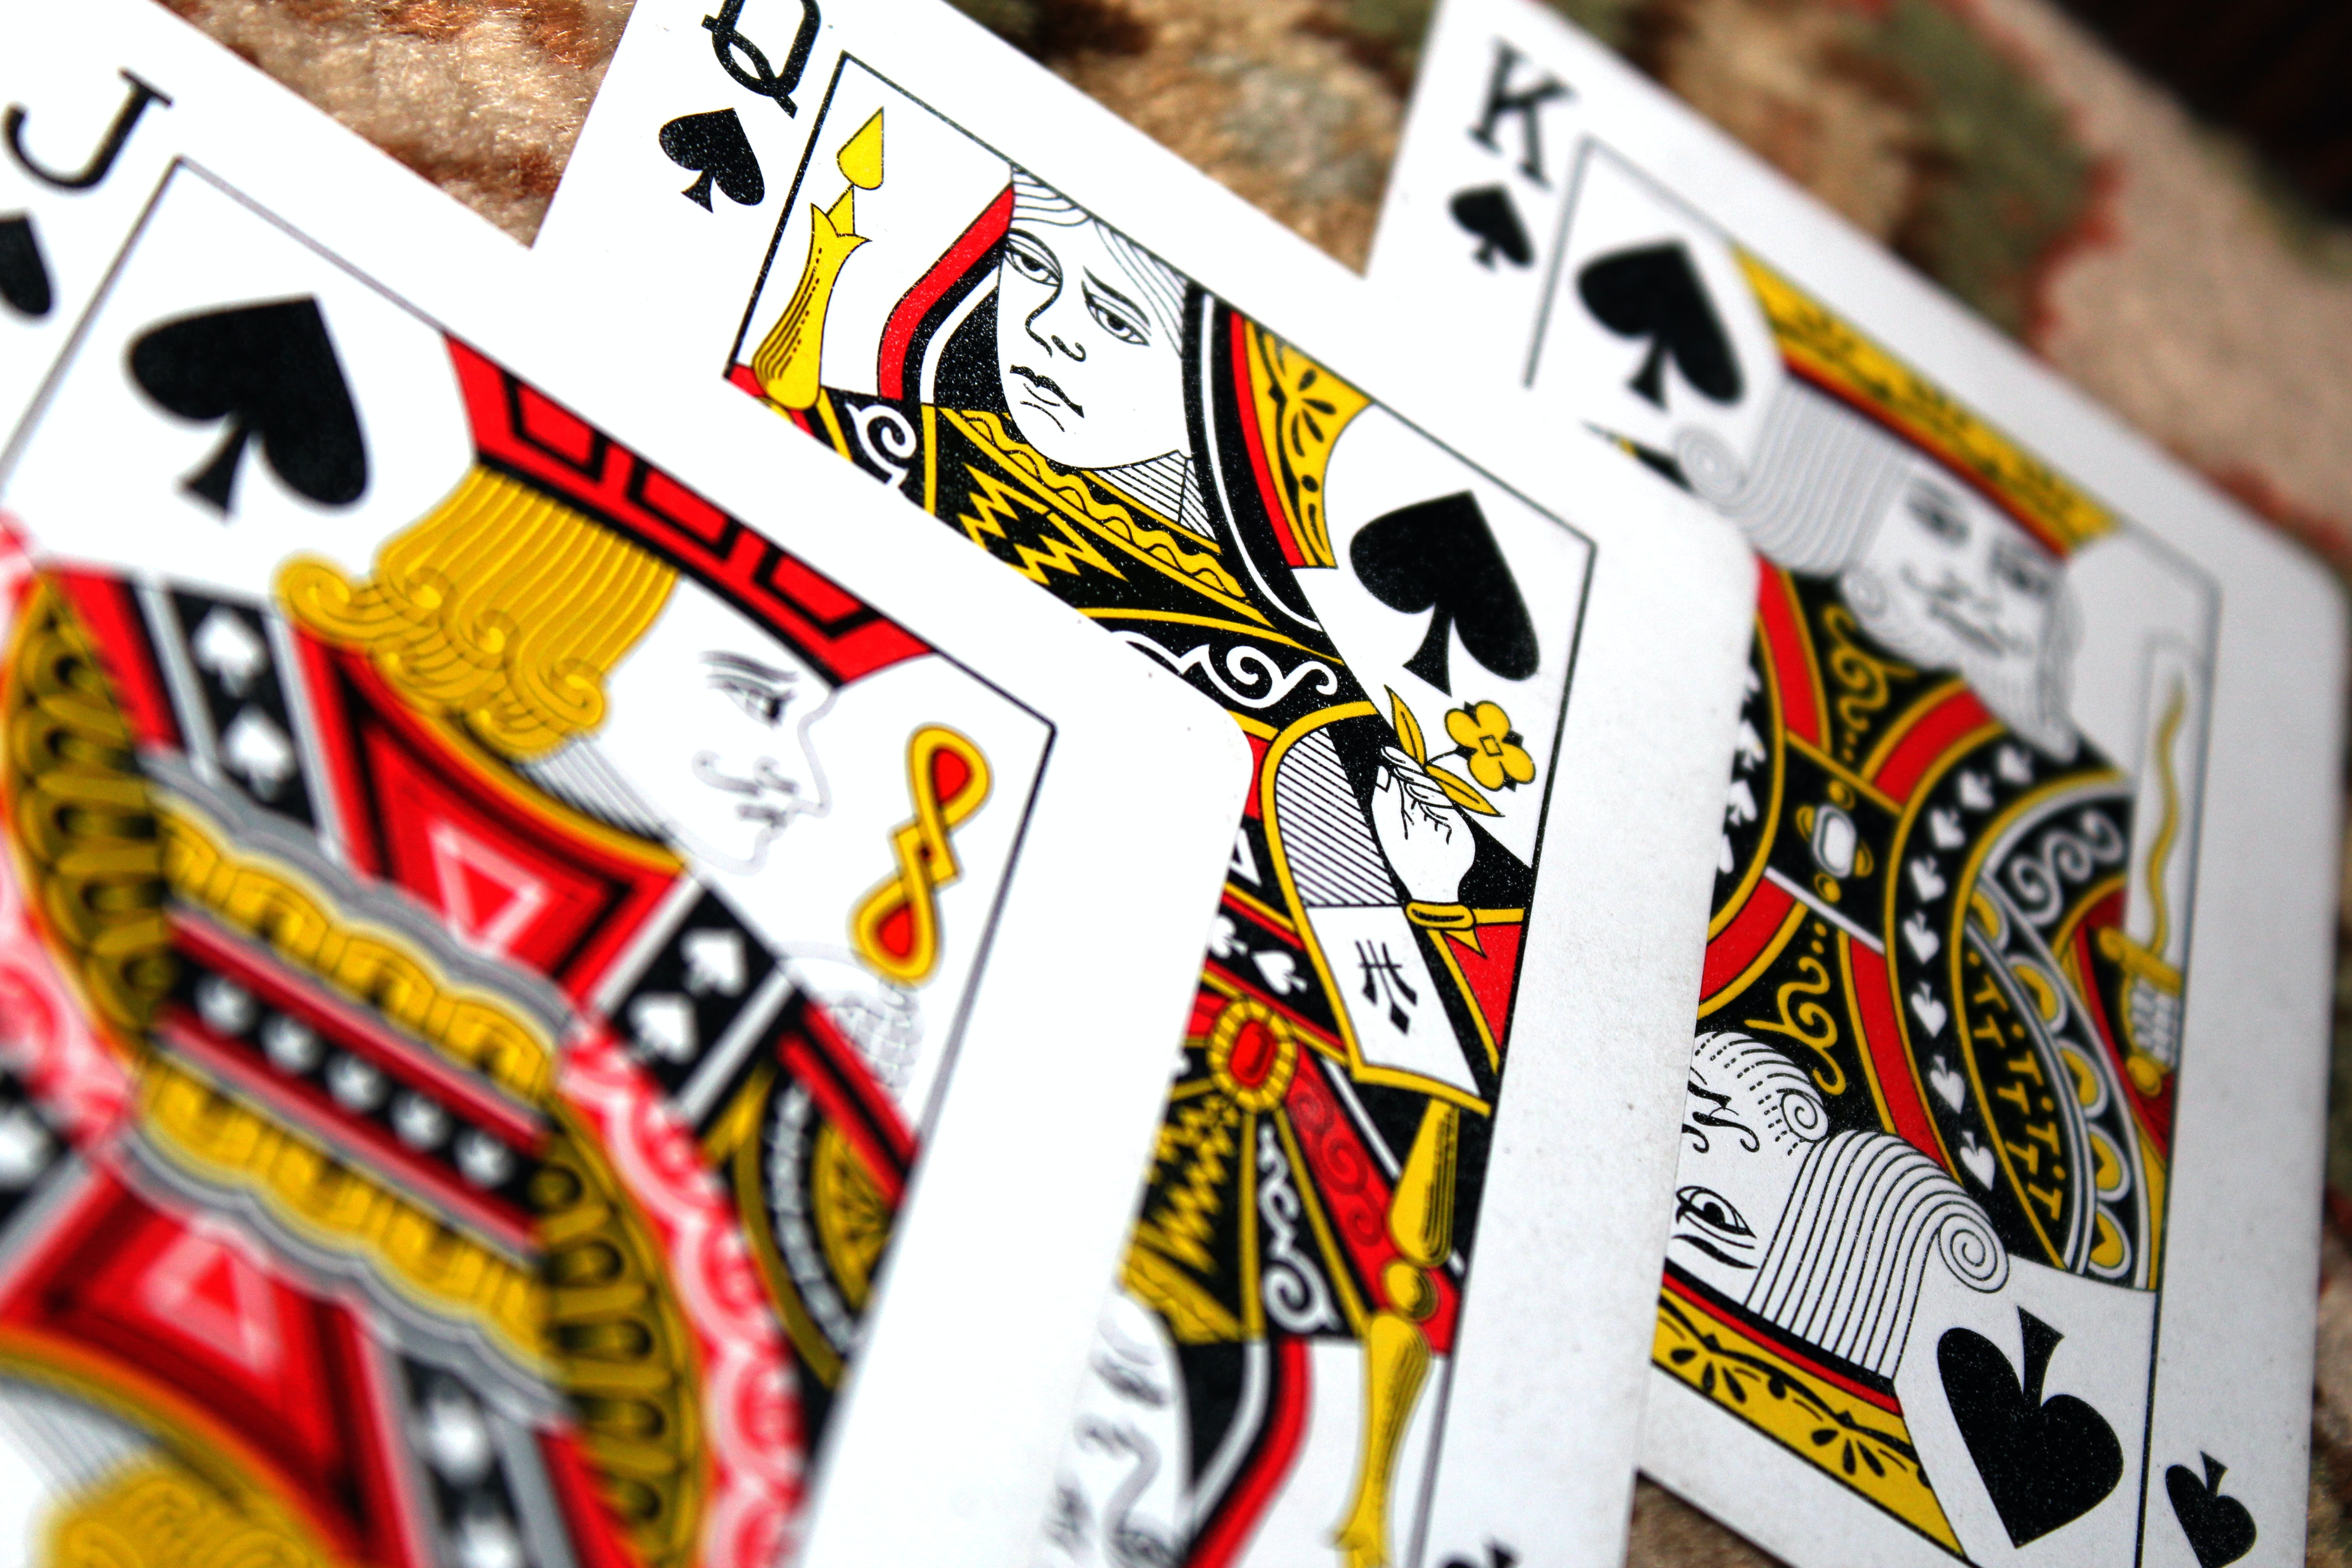 Os jogos de cartas mais populares   - Revista online de  poker